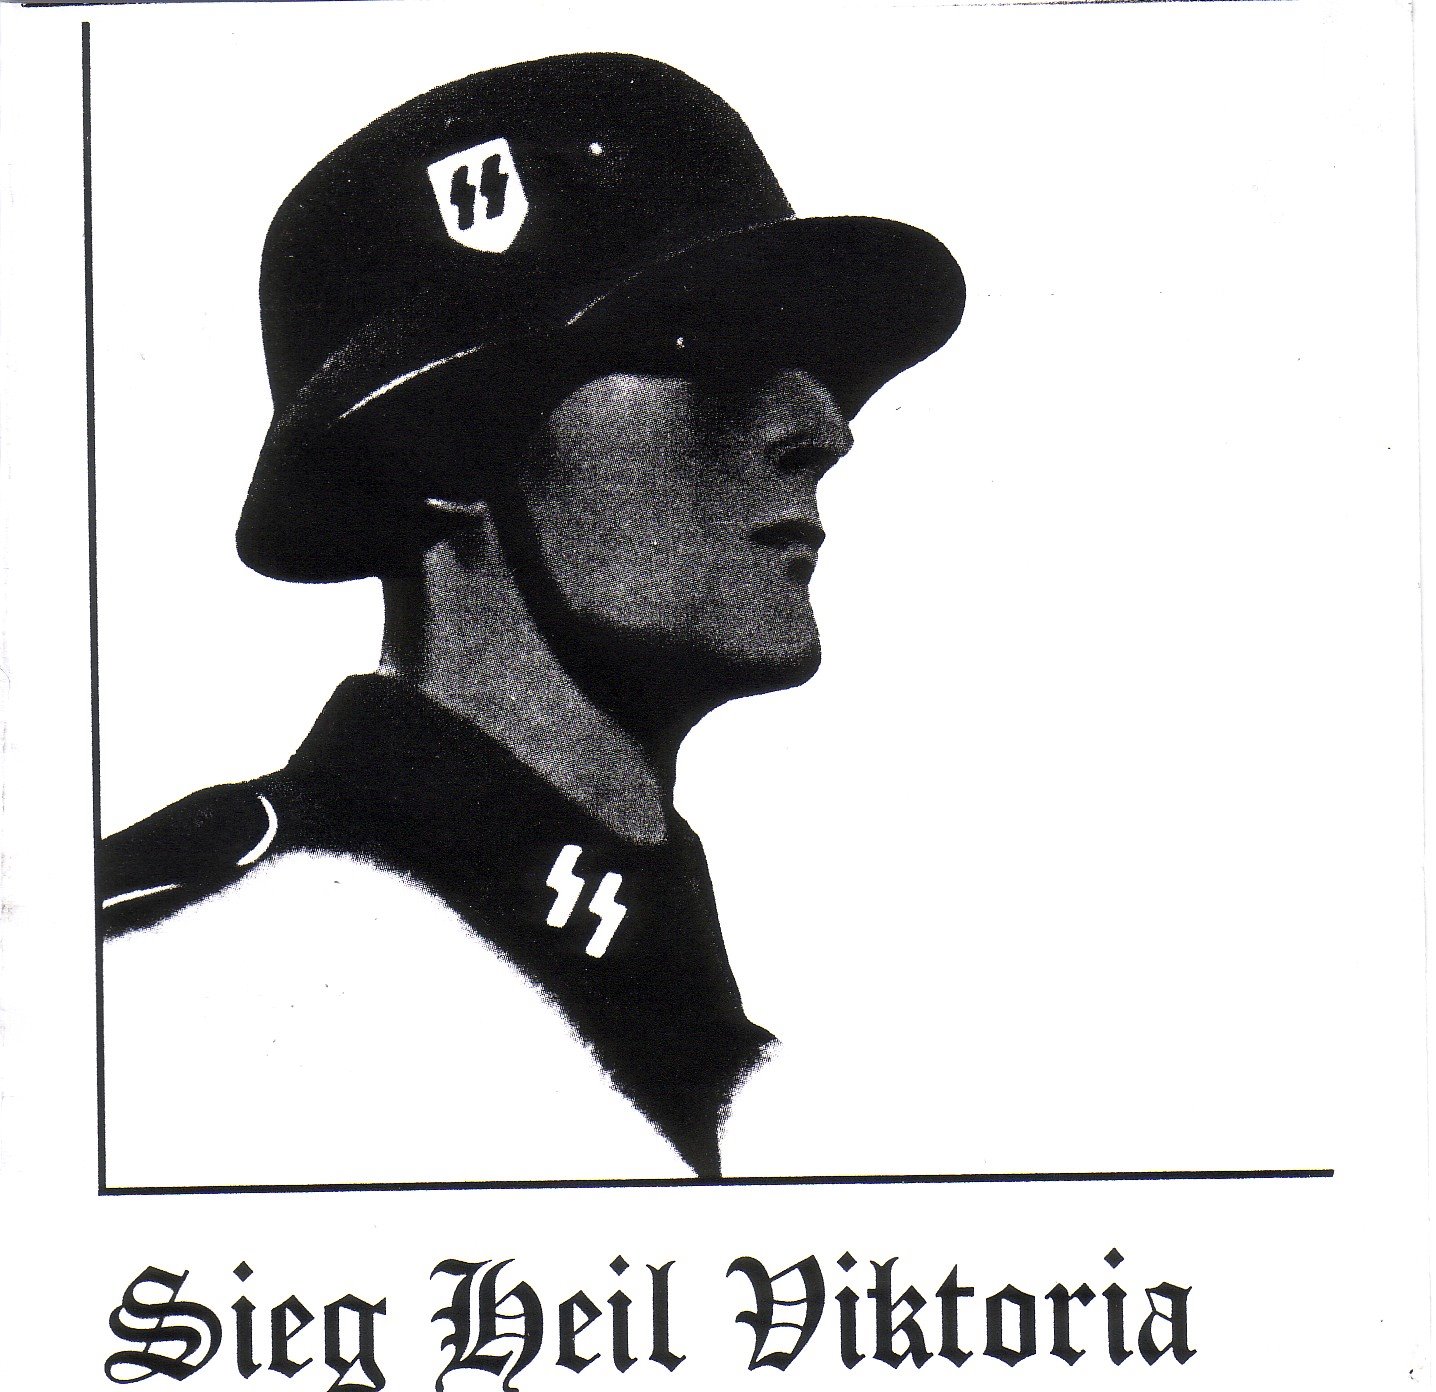 Sieg_Heil_Victoria_Front1.JPG